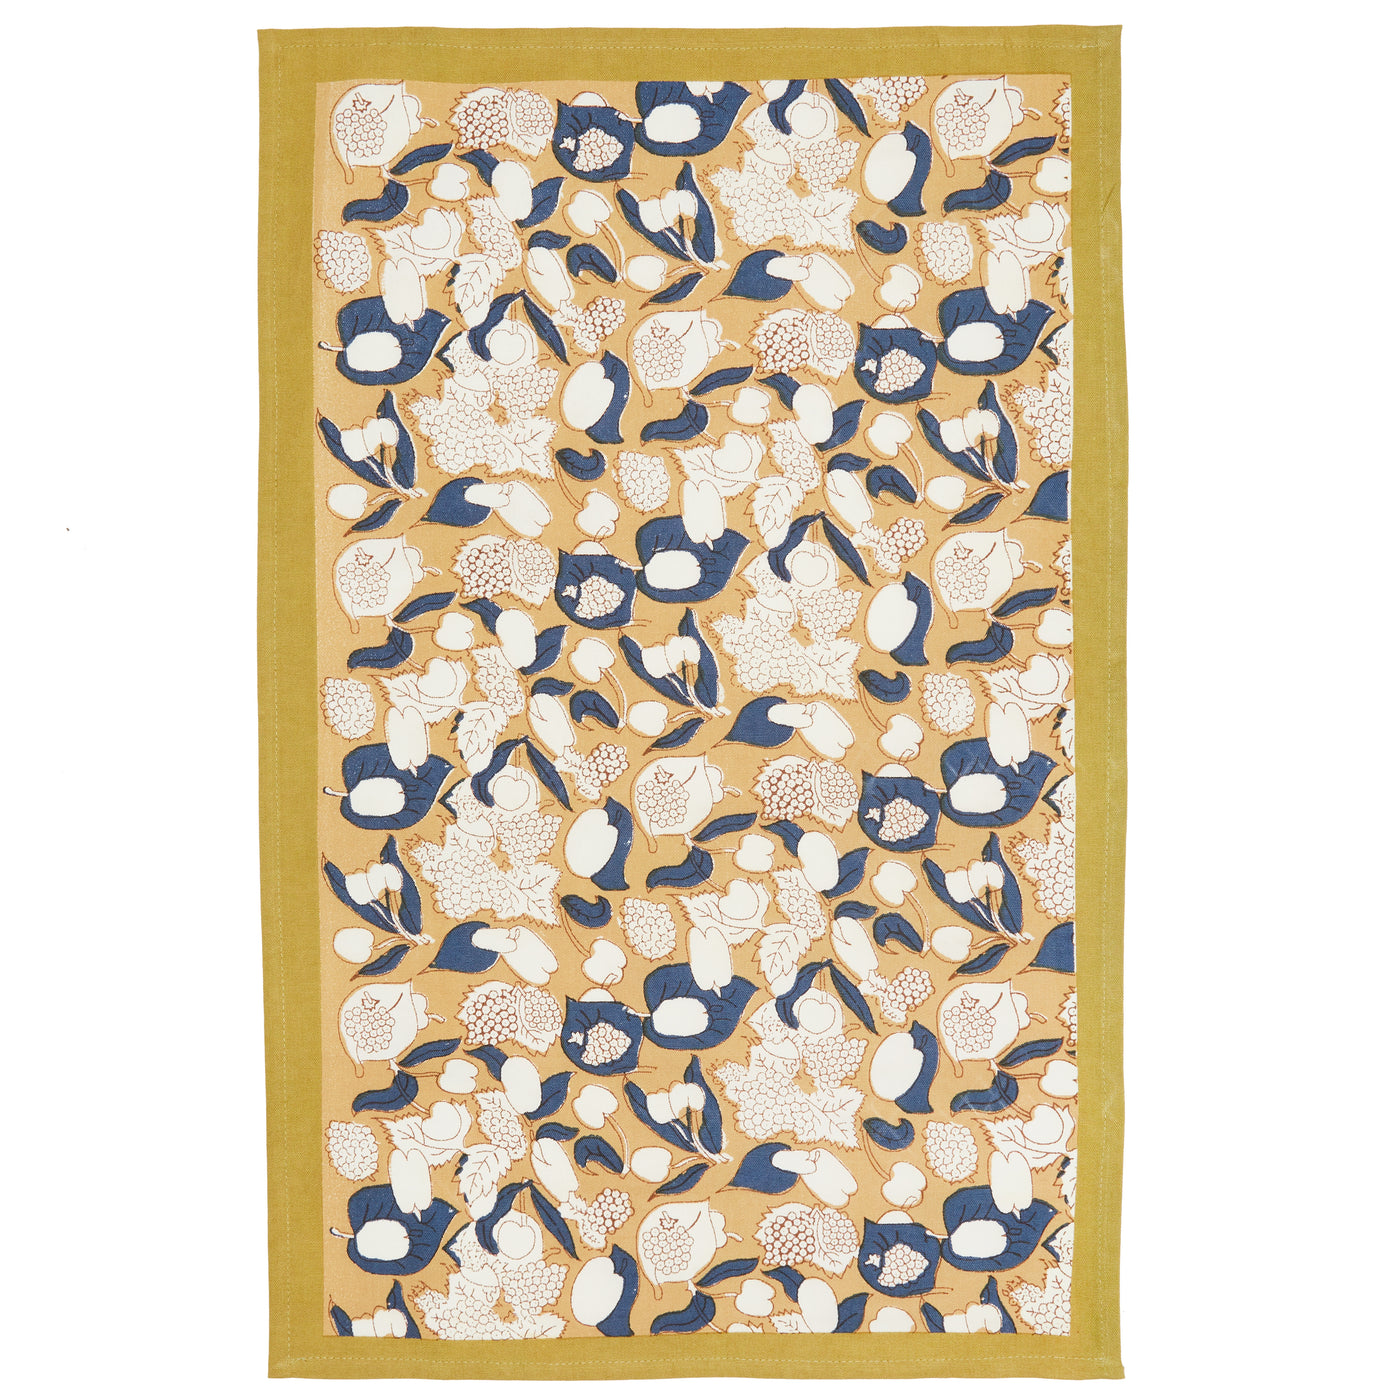 Forest Harvest Tea Towels Mustard & Blue, Set of 3